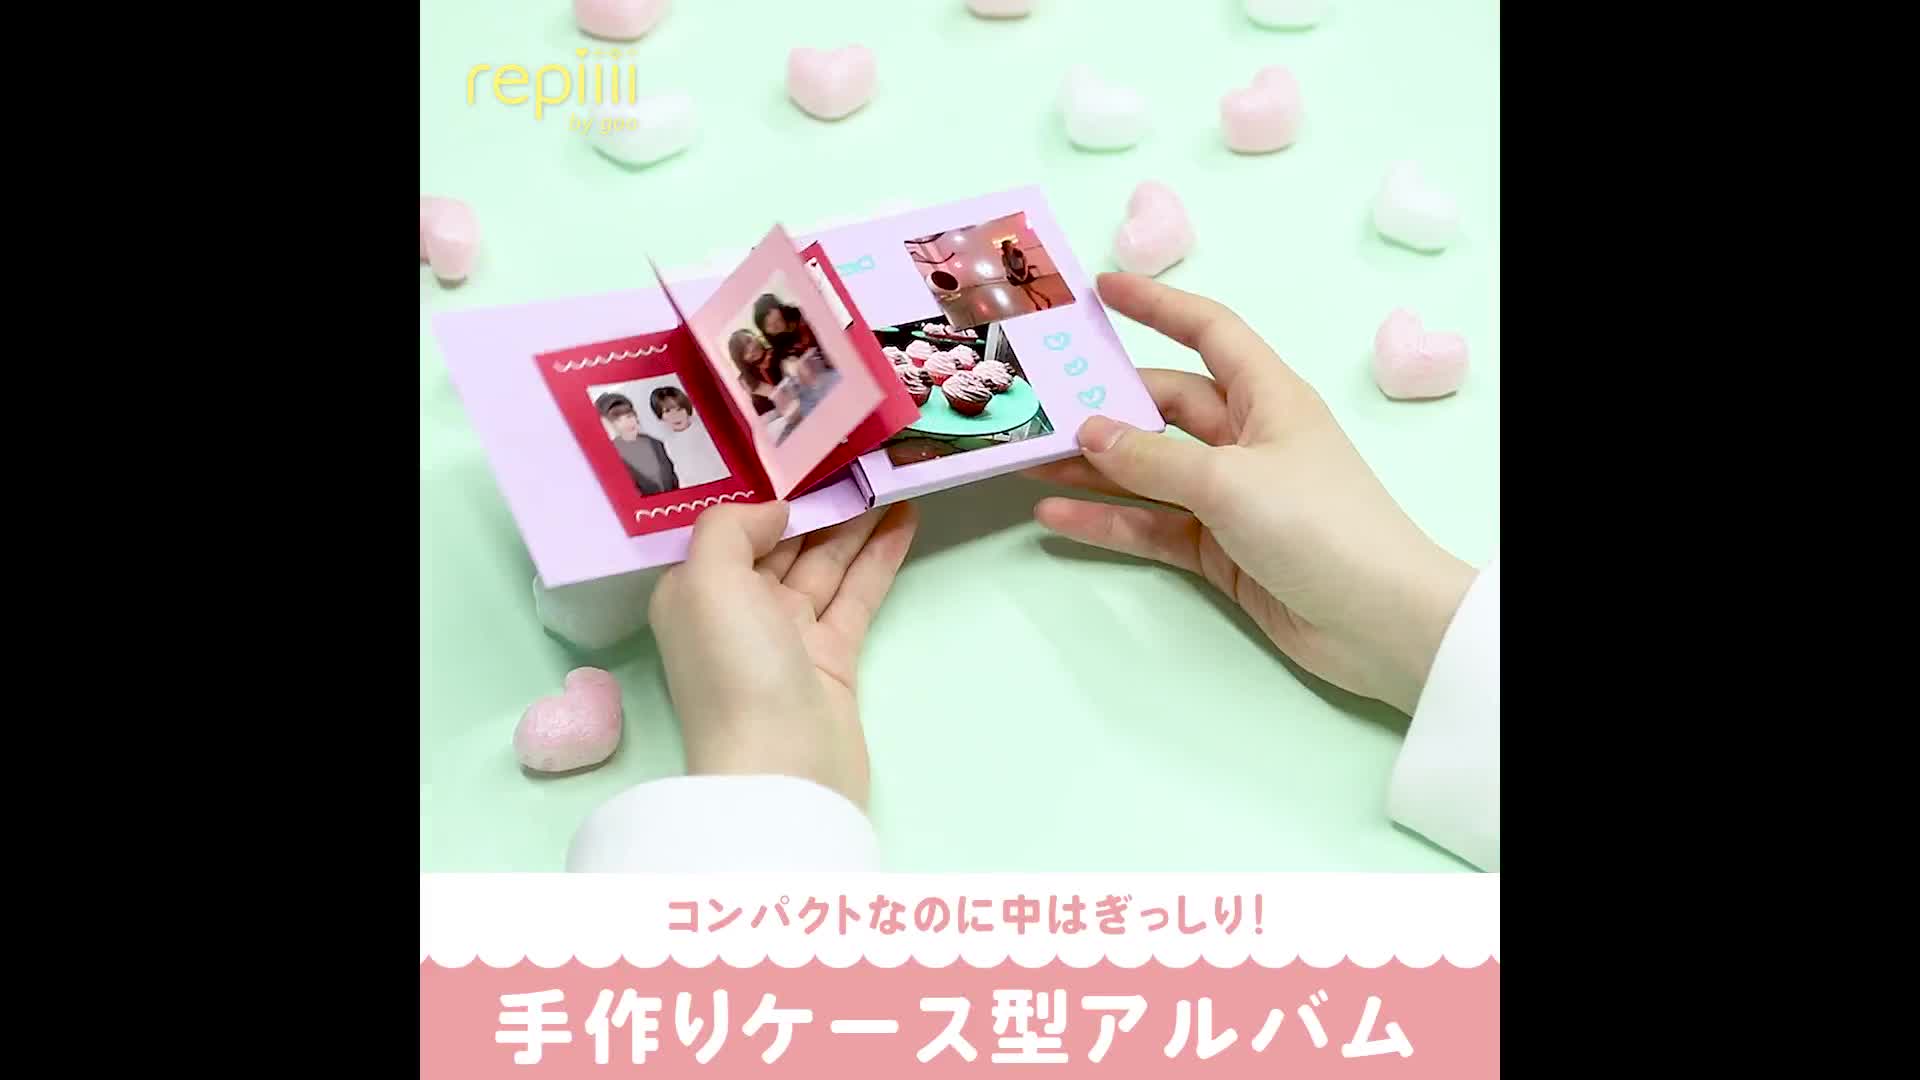 コンパクトなのに中はぎっしり 手作りケース型アルバム Repiiii By Goo レピー Yahoo Japan